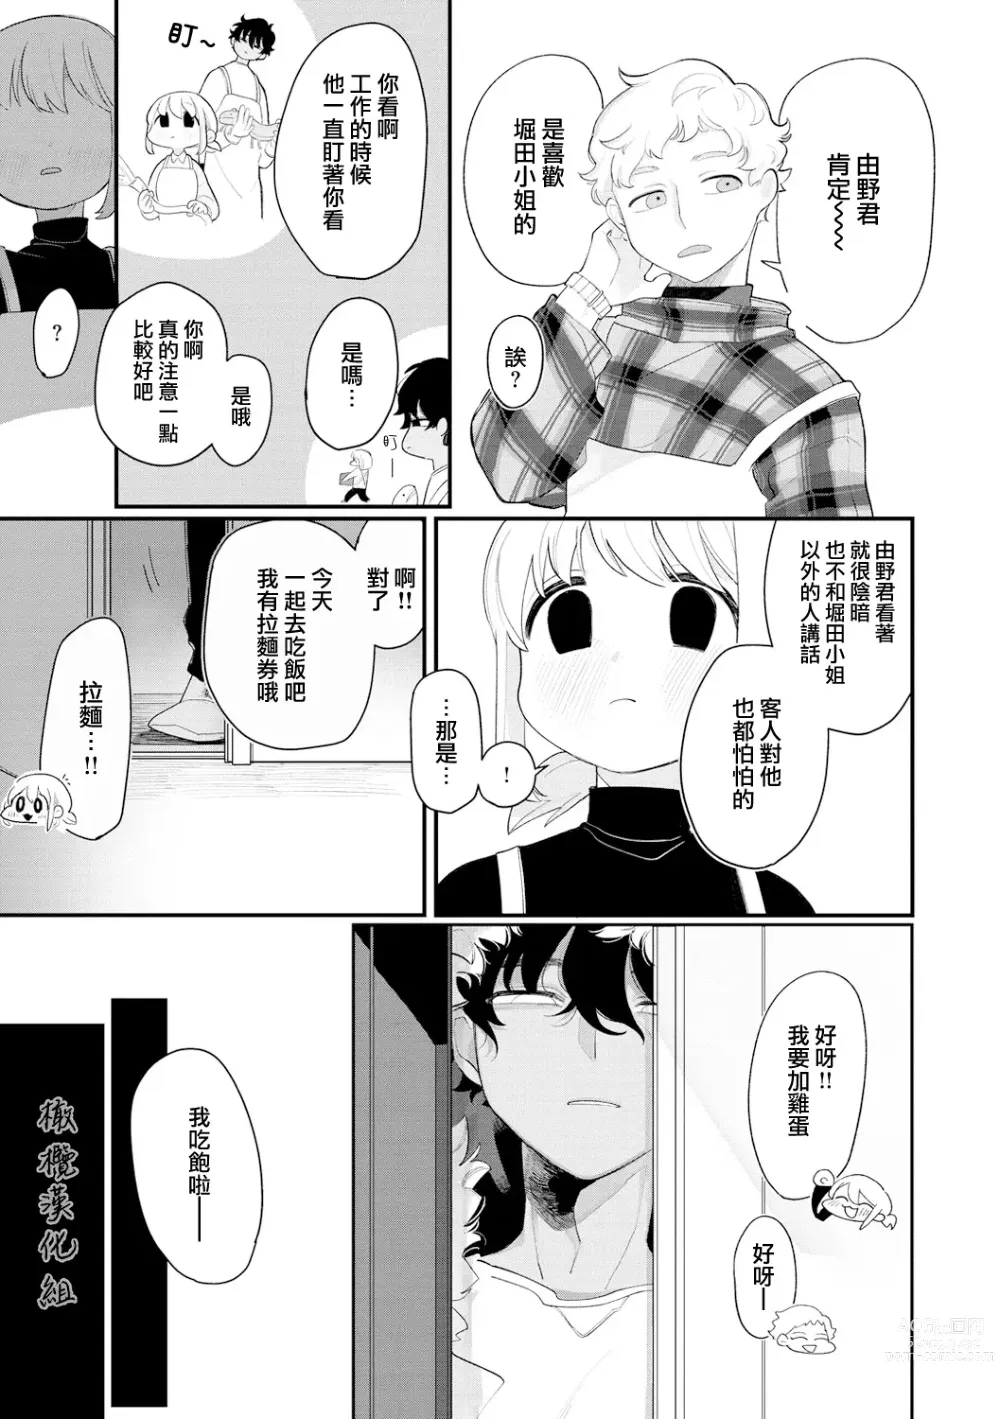 Page 7 of manga 好好相处吧